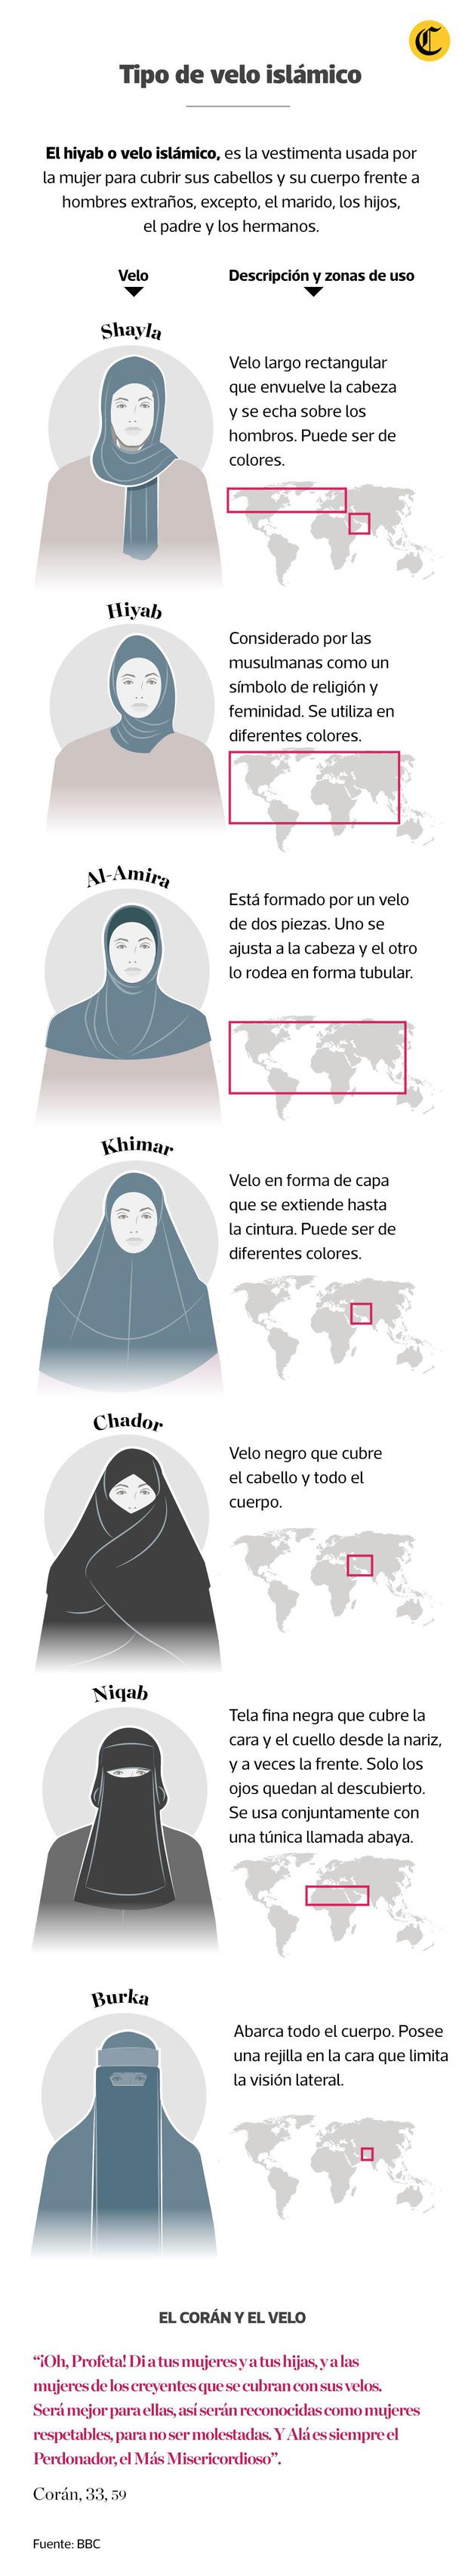 Afganistán: Cómo son los distintos tipos de velo que usan muchas mujeres  musulmanas | MUNDO | EL COMERCIO PERÚ